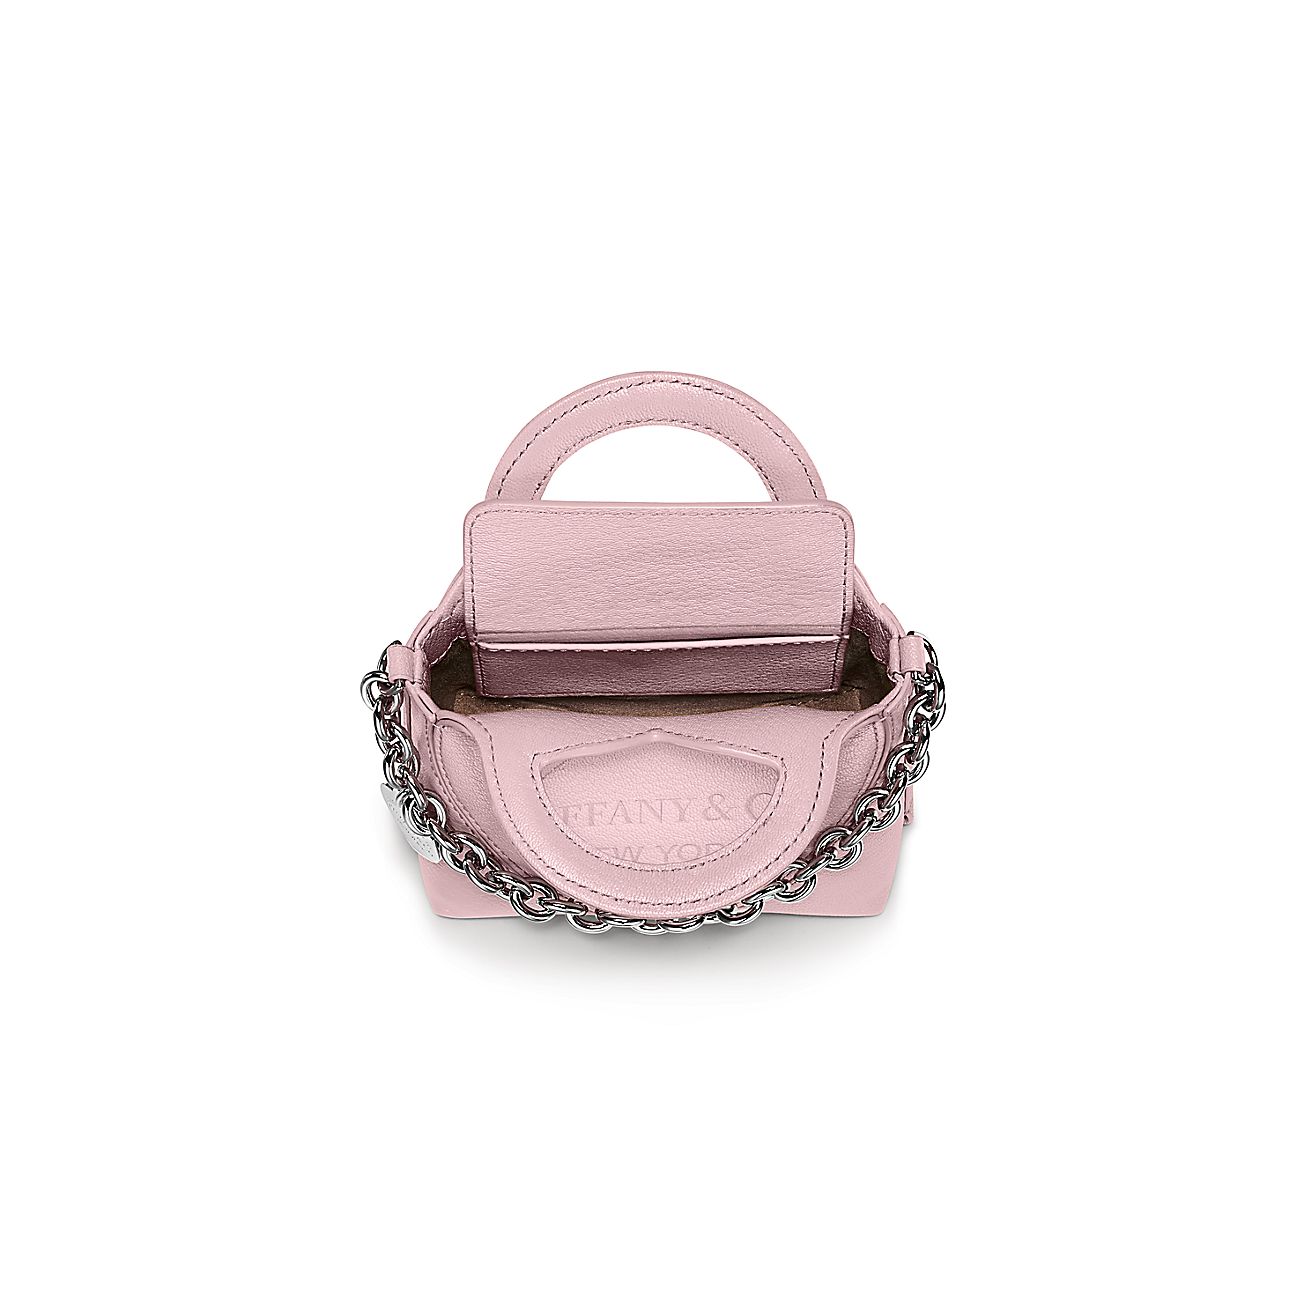 Tiffany & Co. Return to Tiffany 2way Heart Mini Crossbody Bag Handbag Pink  Auth